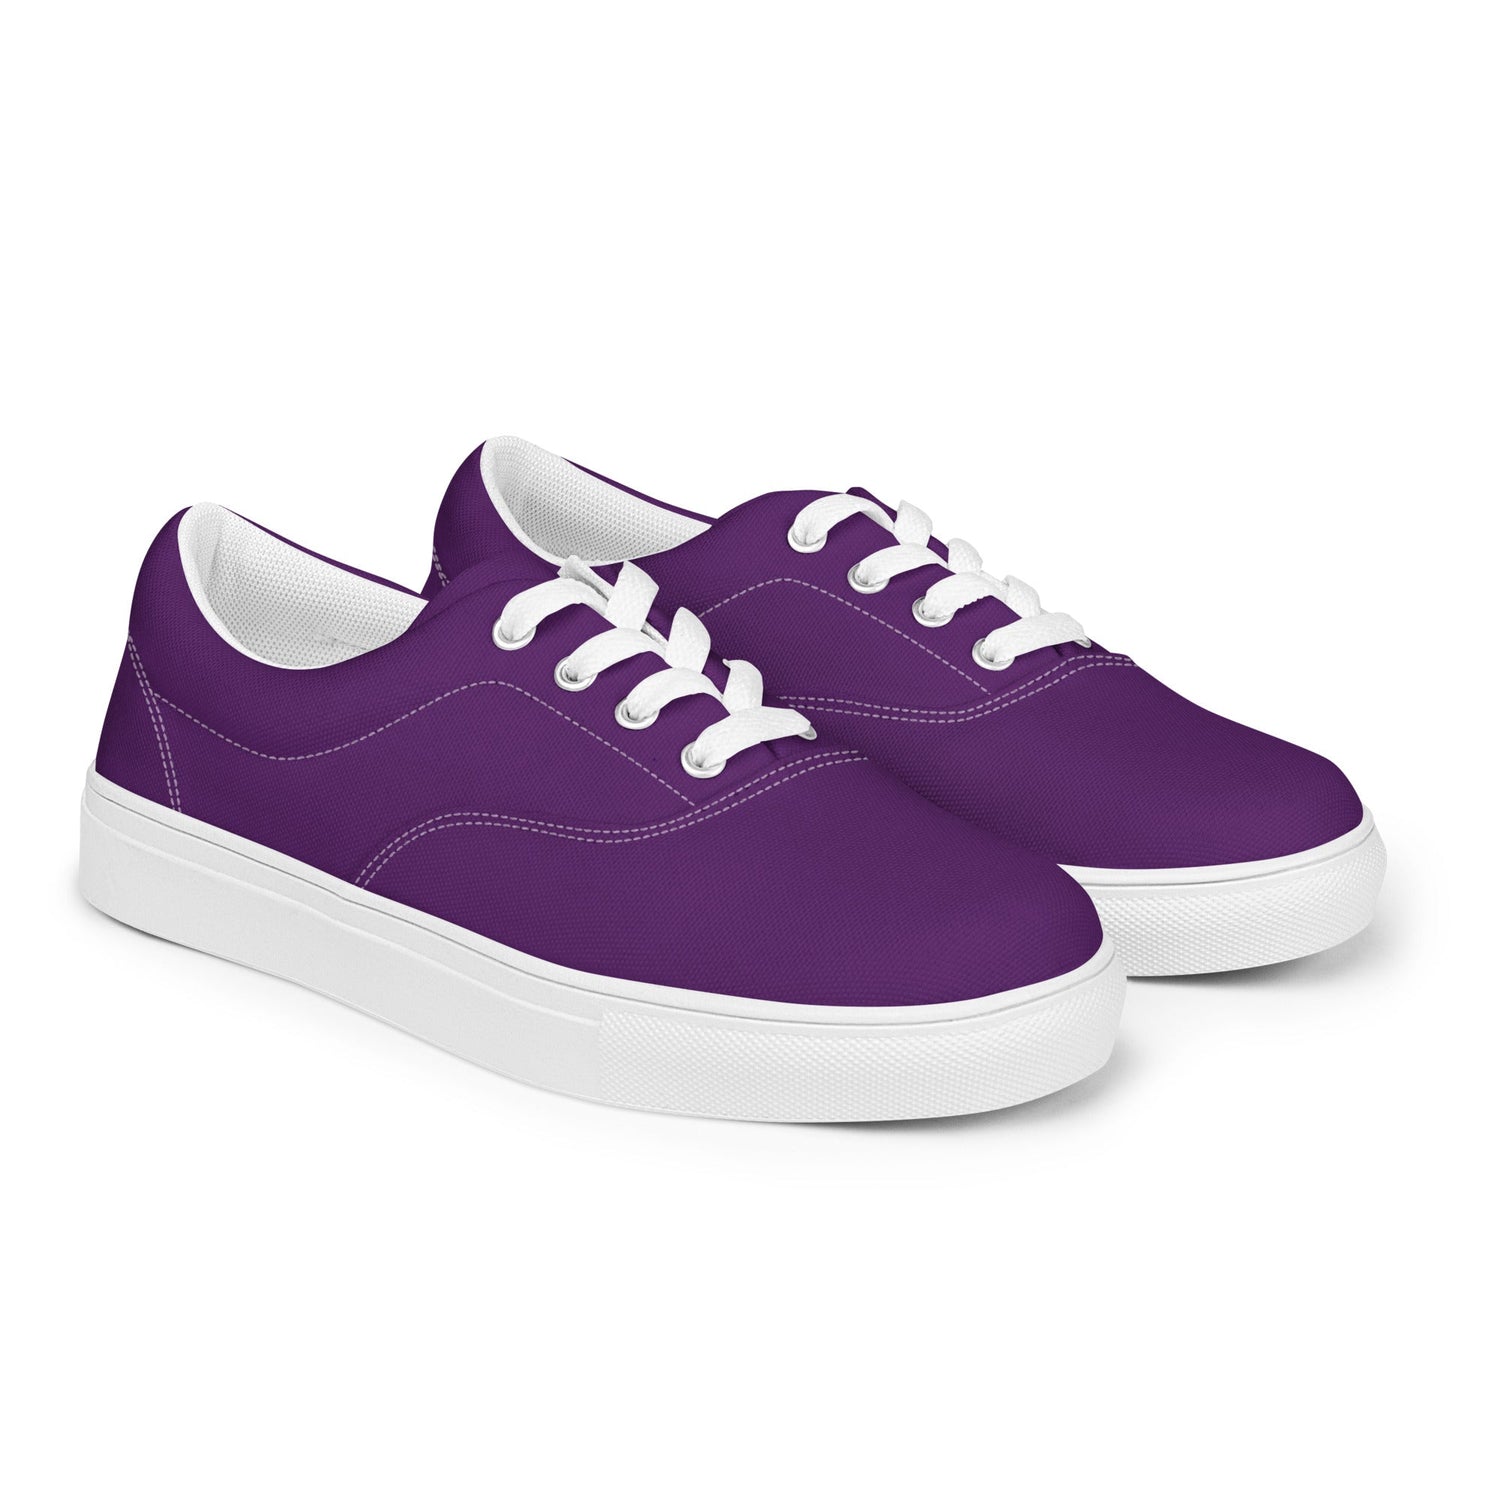 klasneakers Women’s lace-up canvas shoes - Royal Purple